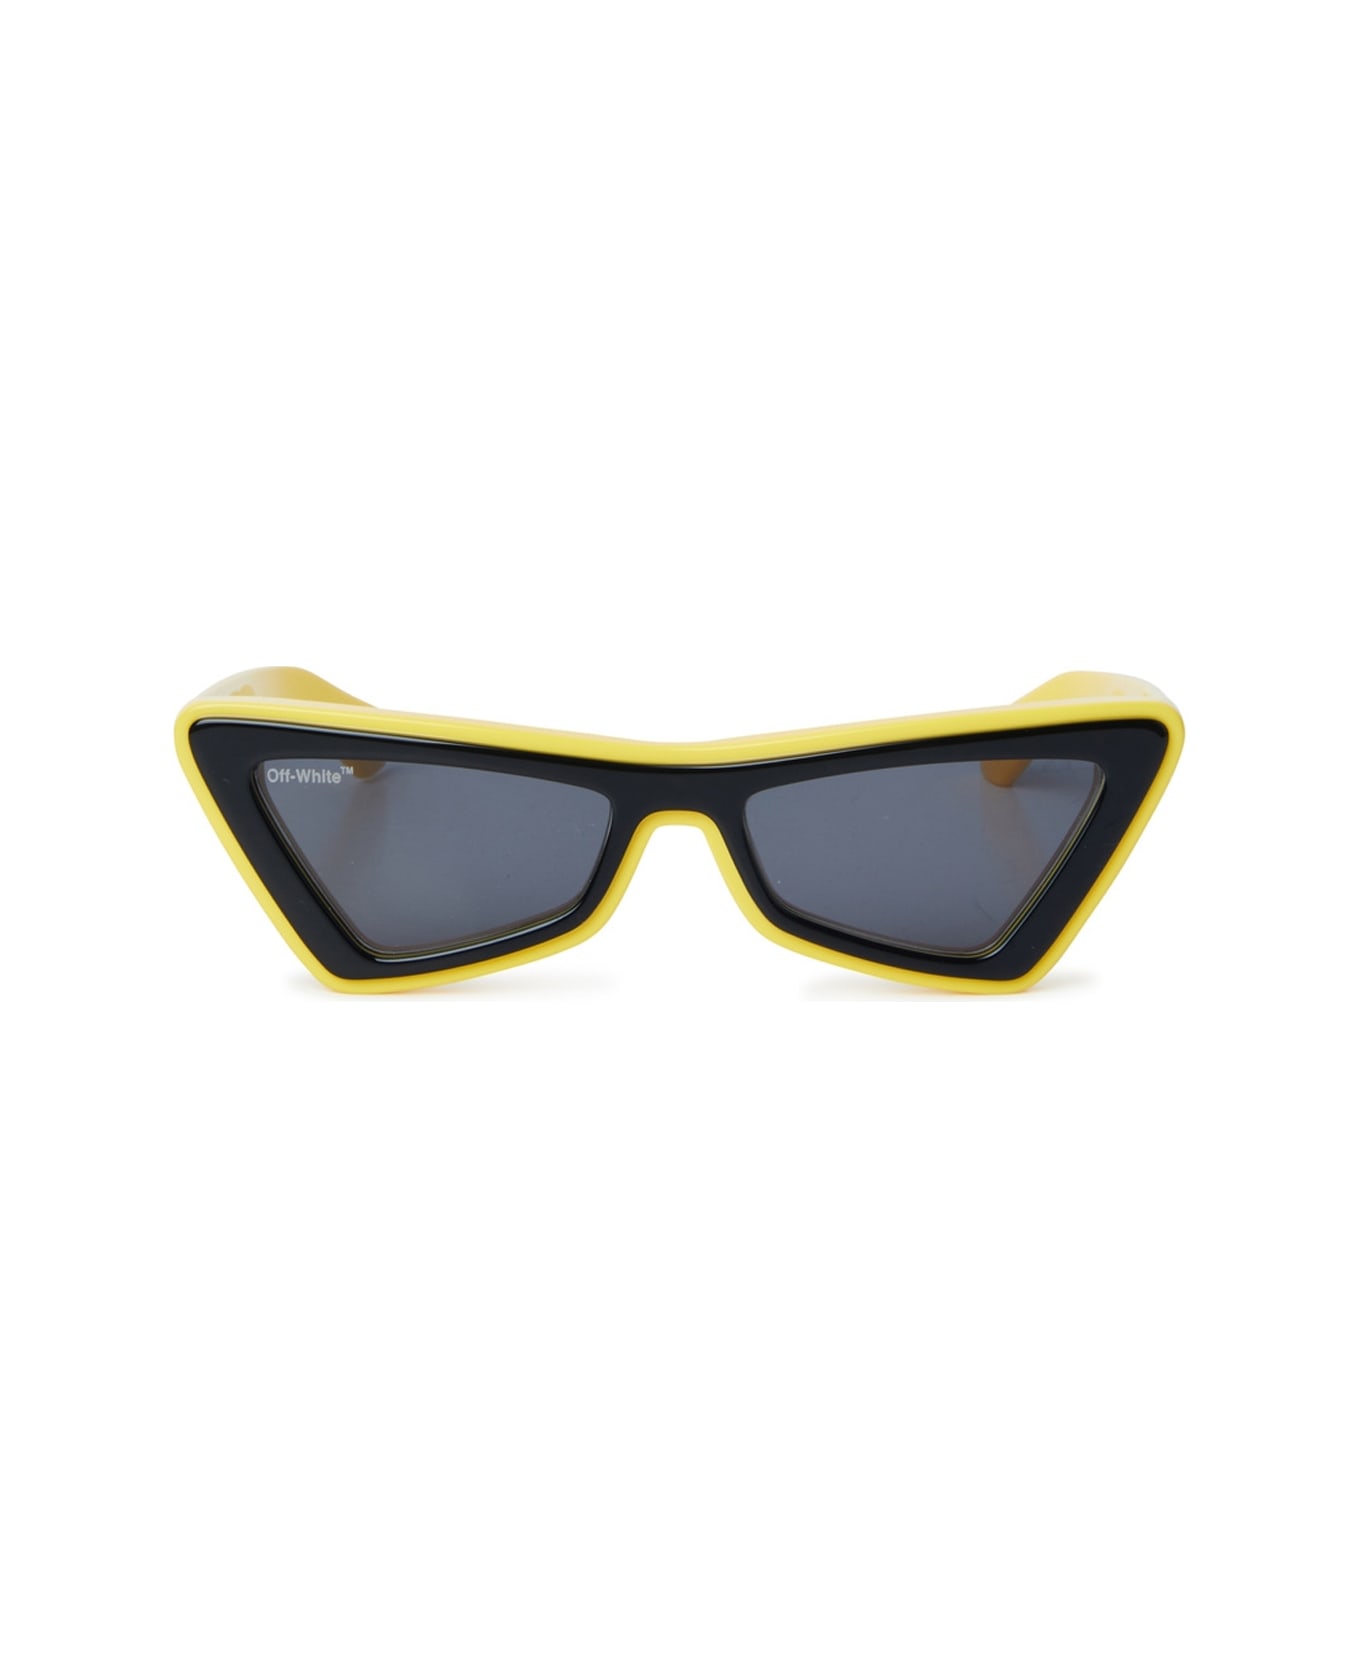 Off-White Artemisia Sunglasses - Giallo